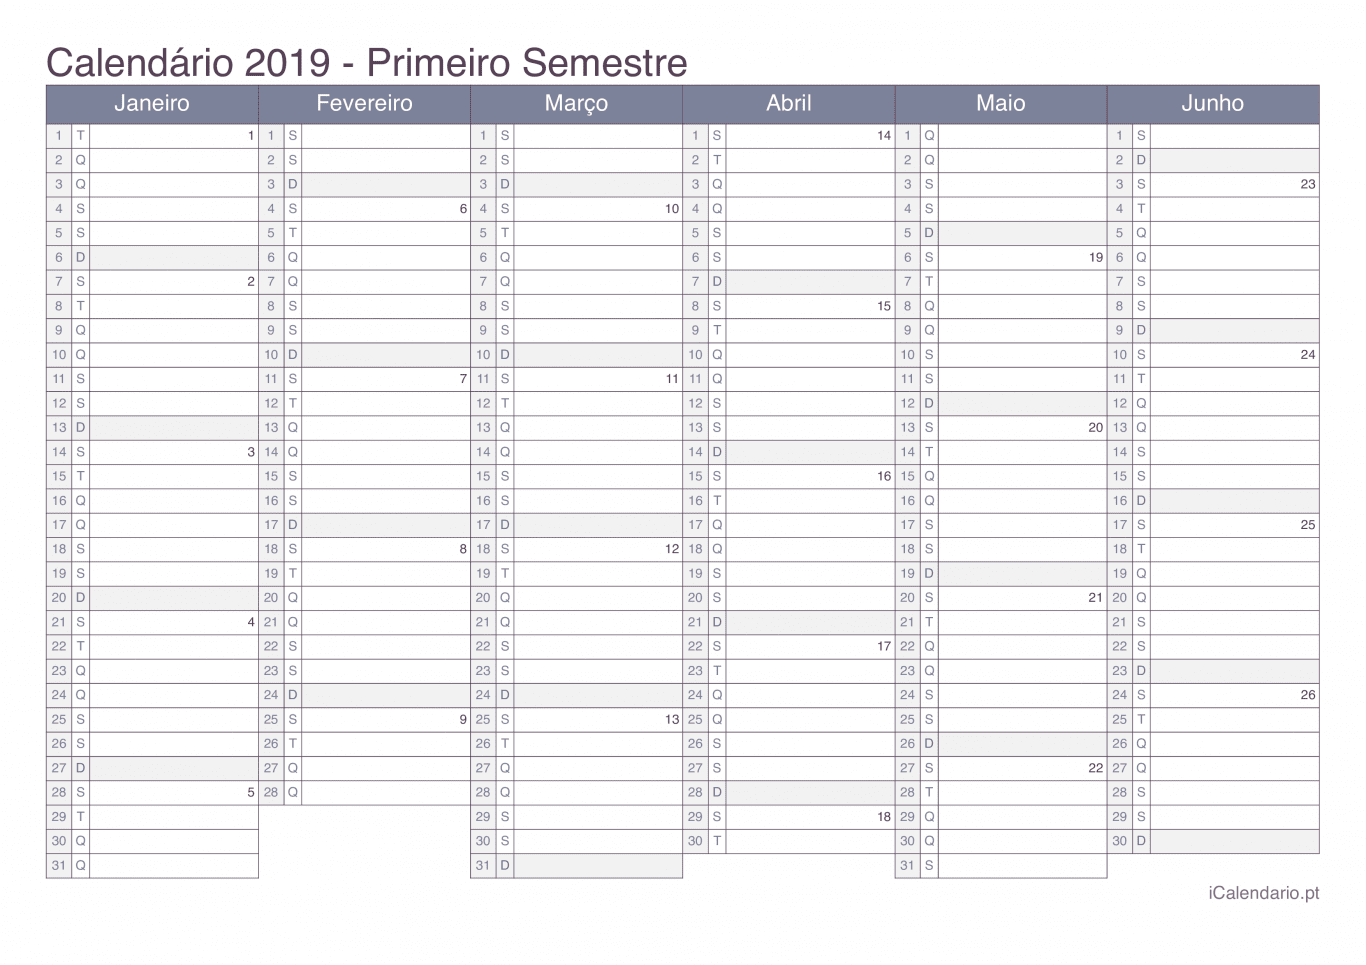 Calendário por semestre com números da semana 2019 - Office